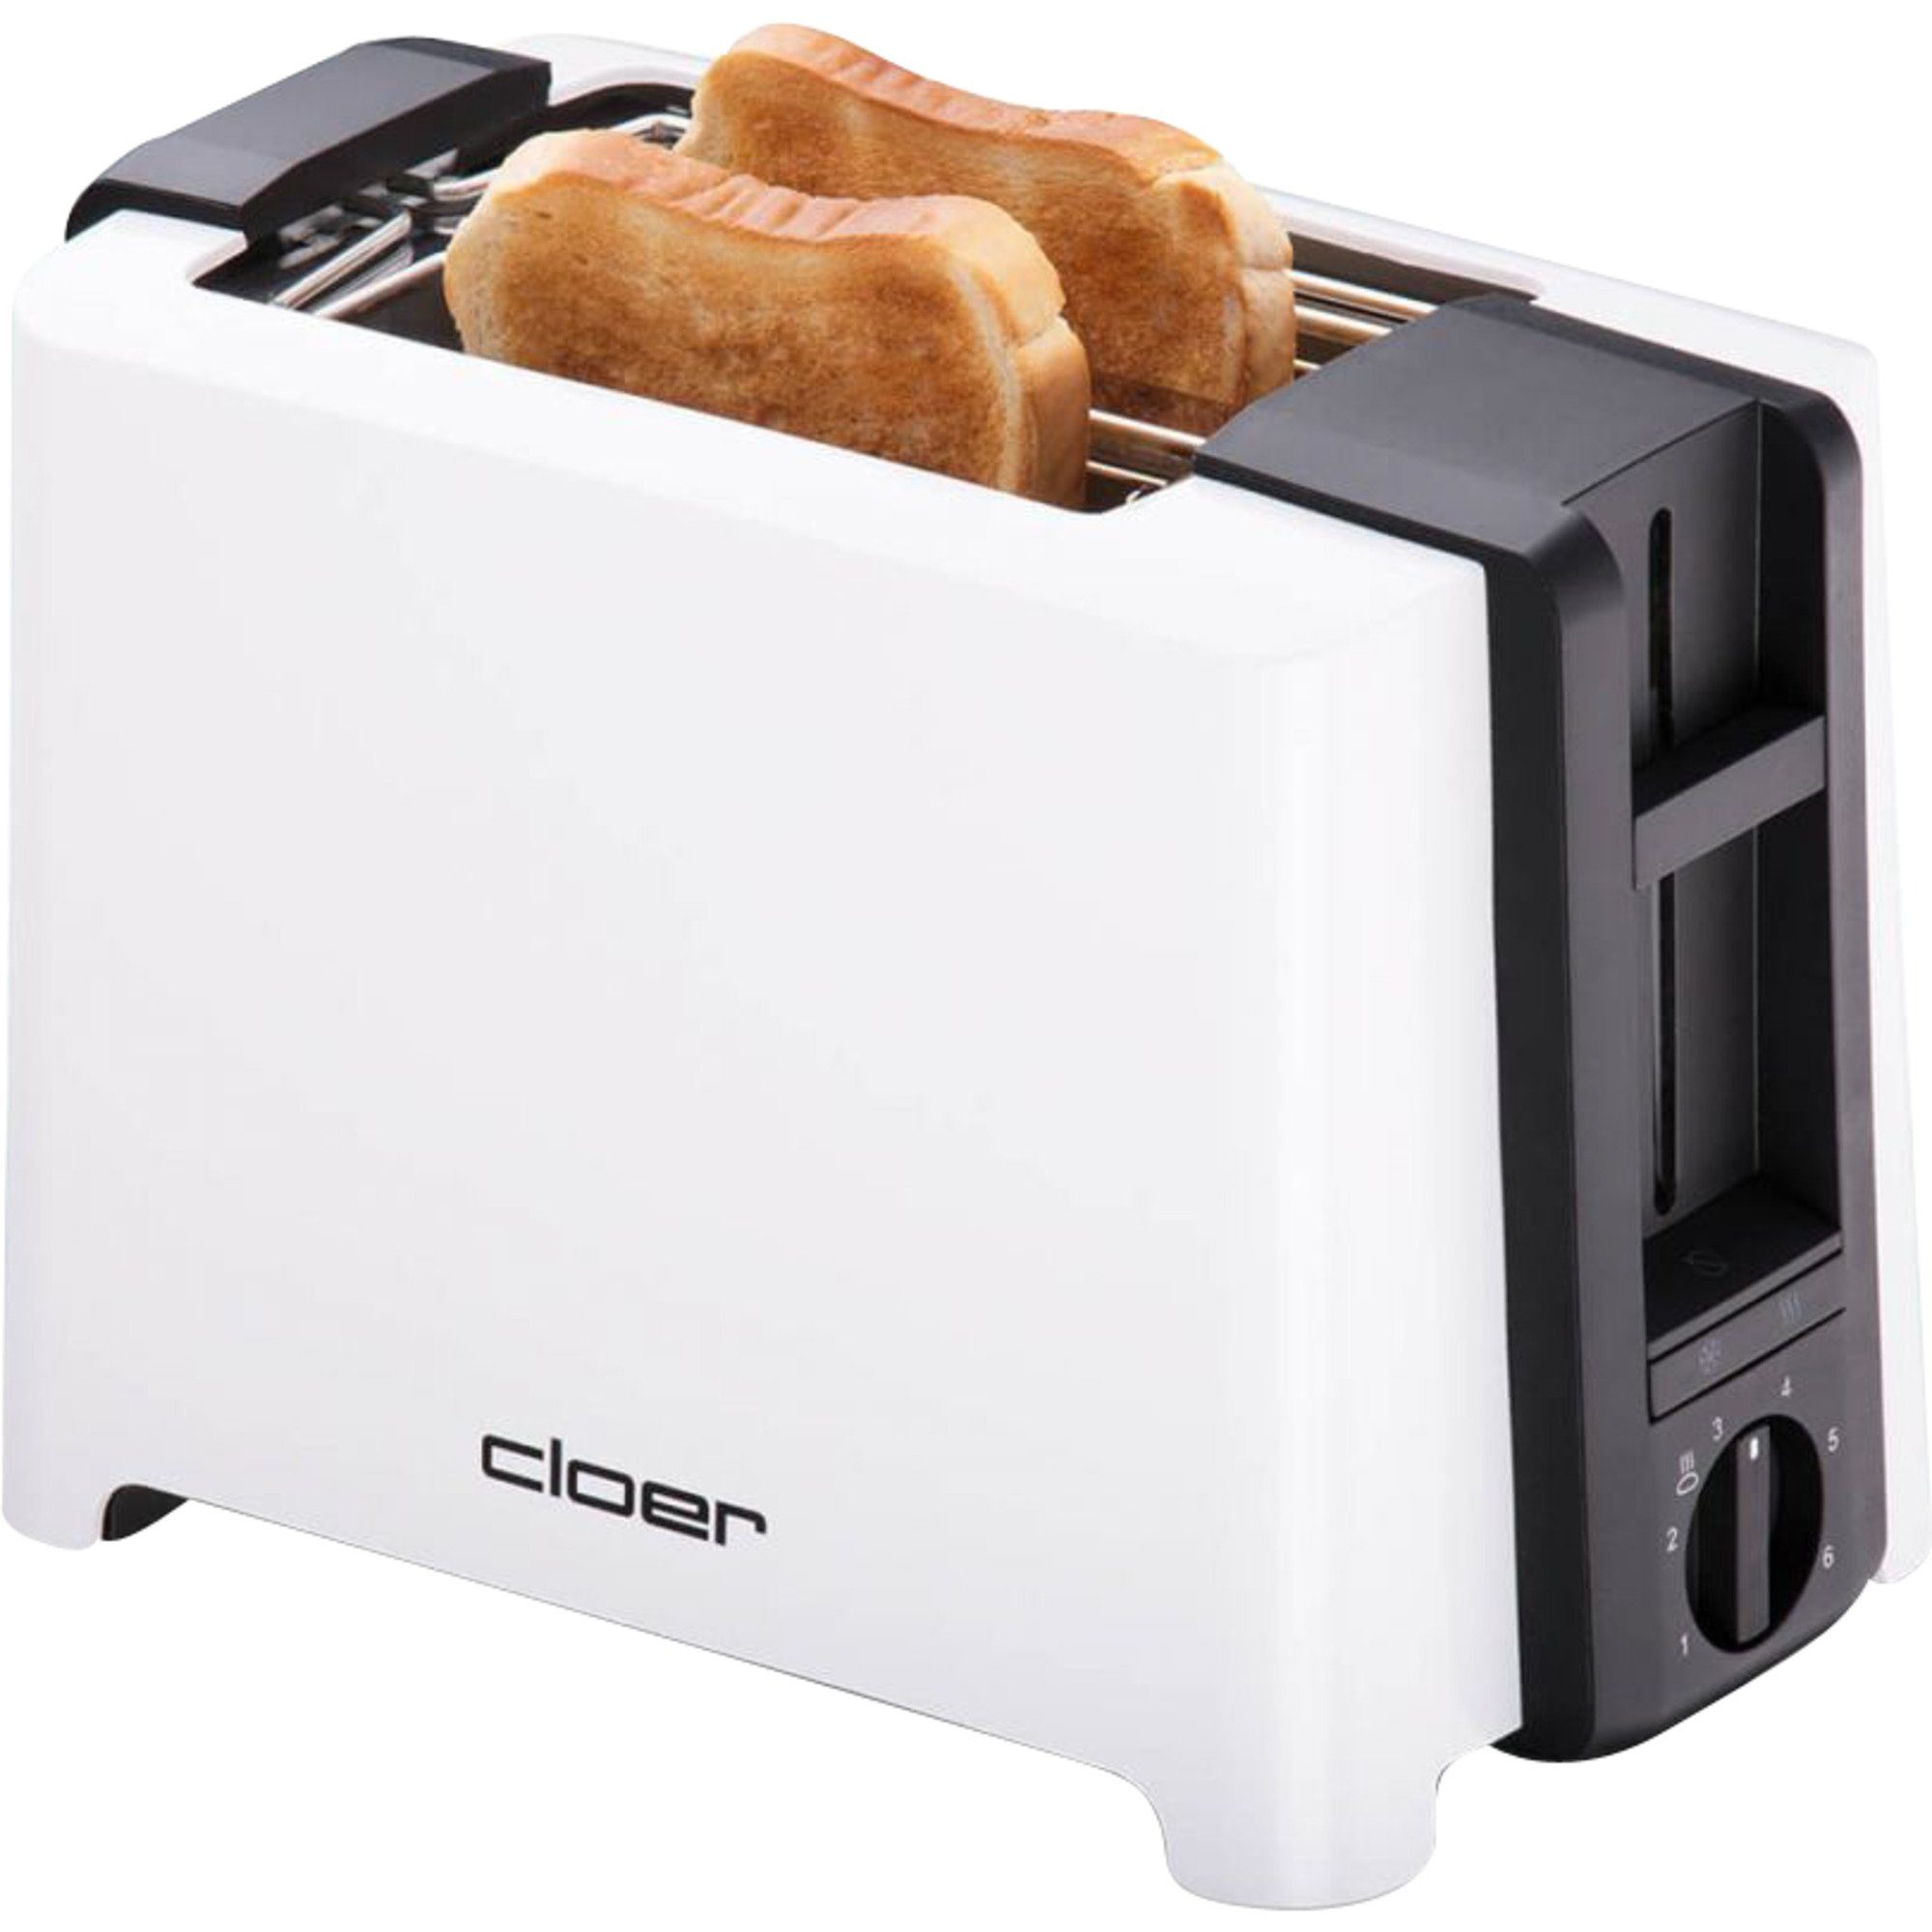 Cloer Toaster Full Size Toaster 3531 online kaufen | OTTO